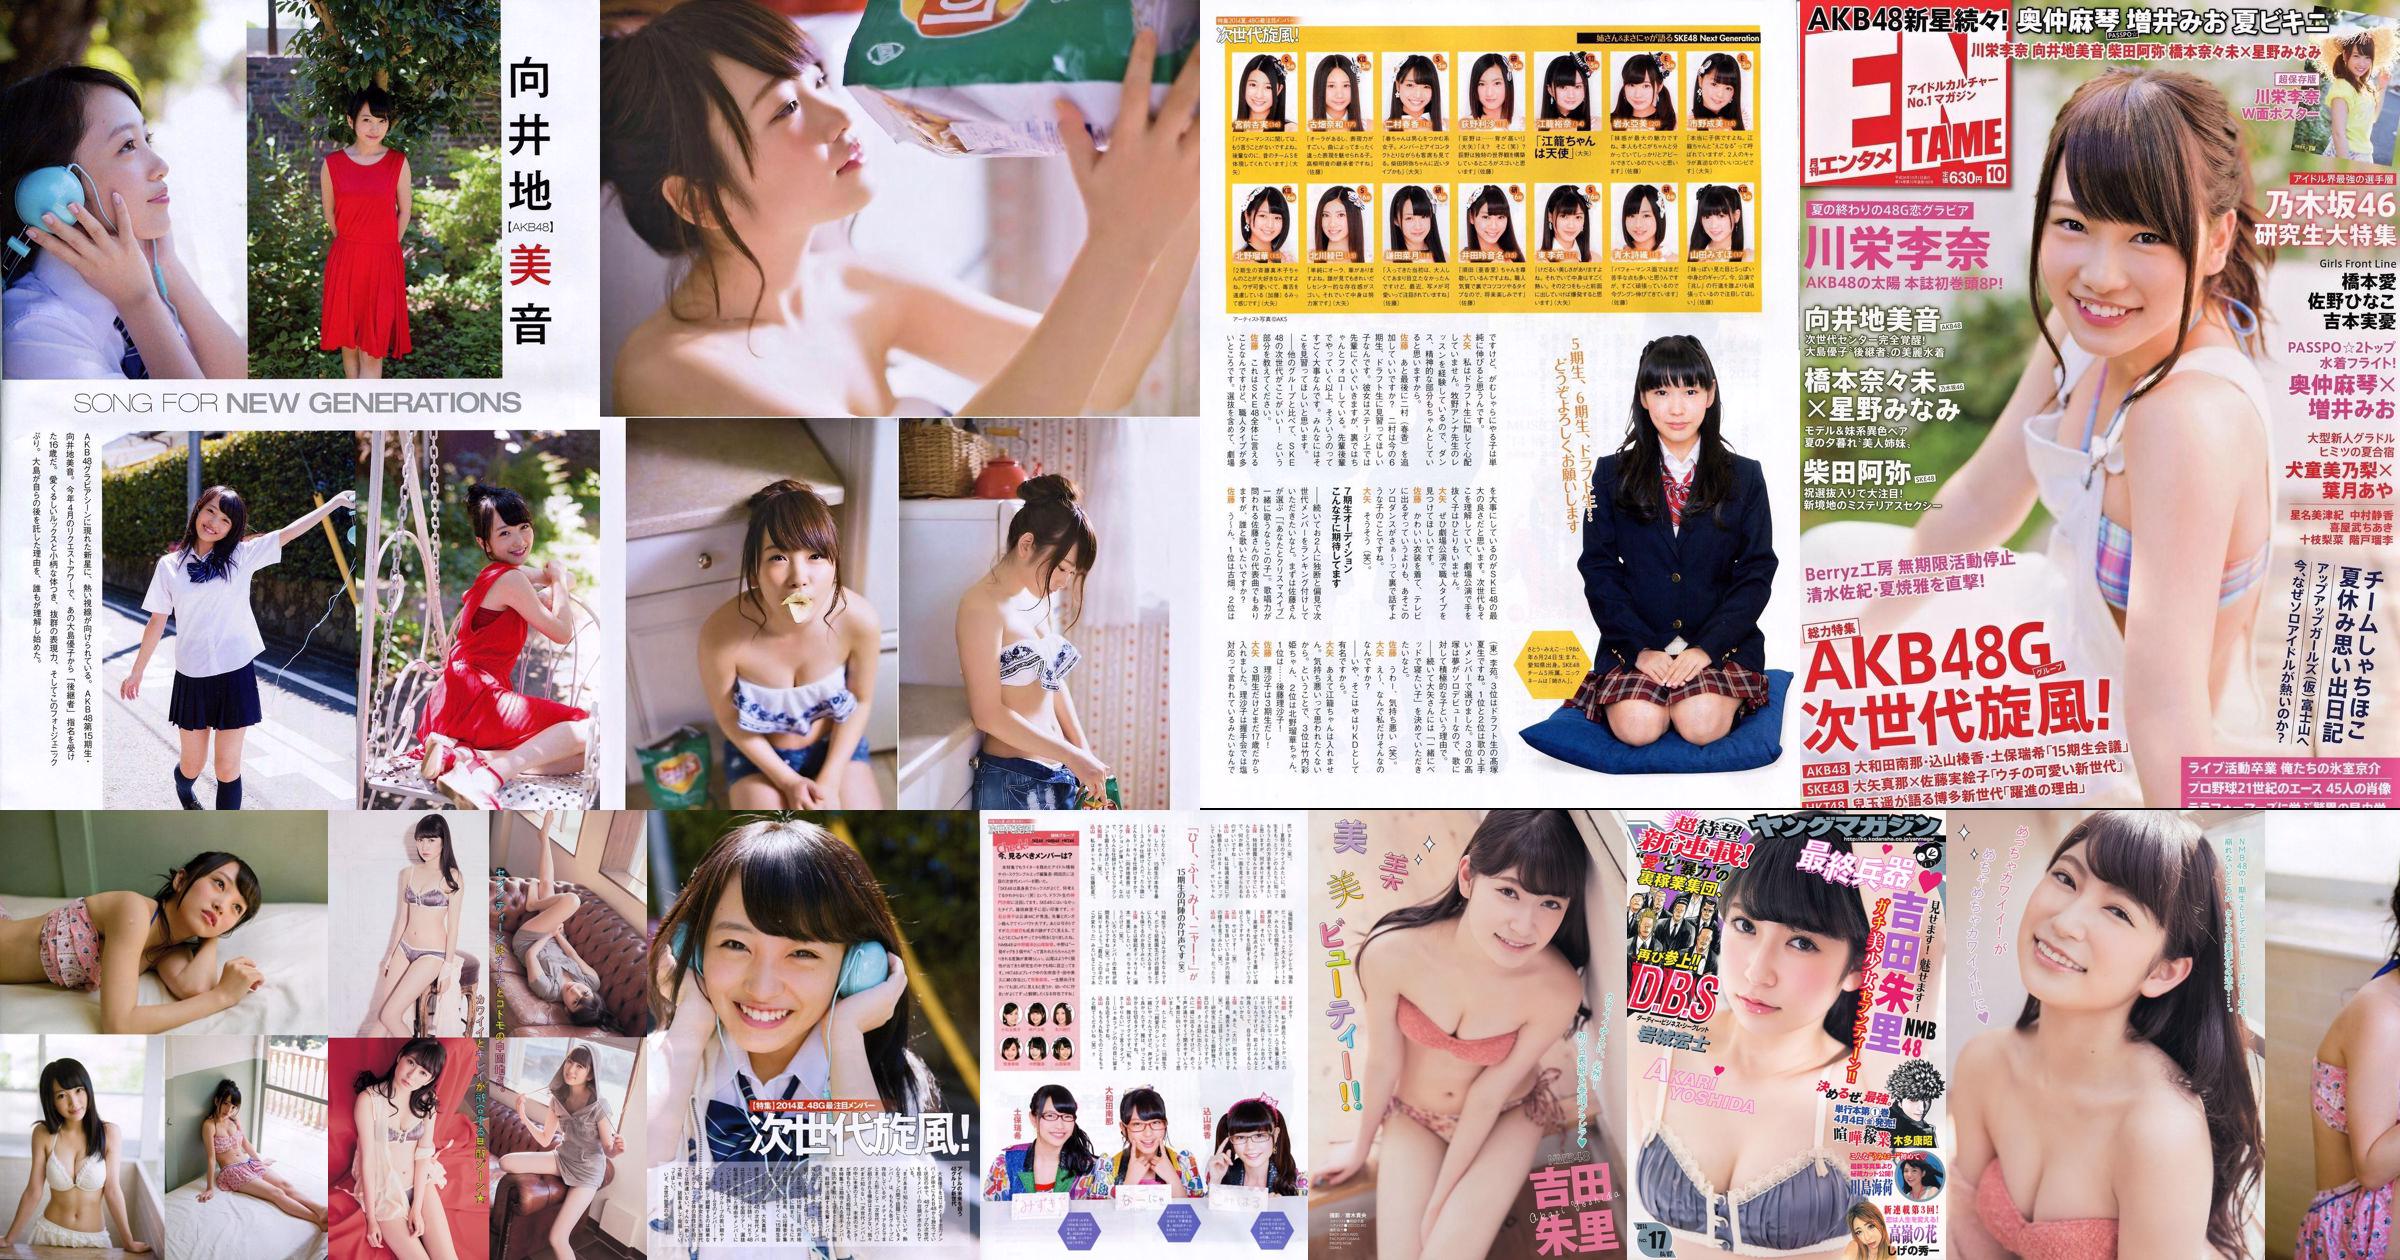 [Young Magazine] Akari Yoshida Umika Kawashima 2014 No.17 Photograph No.1cf8ae Page 1